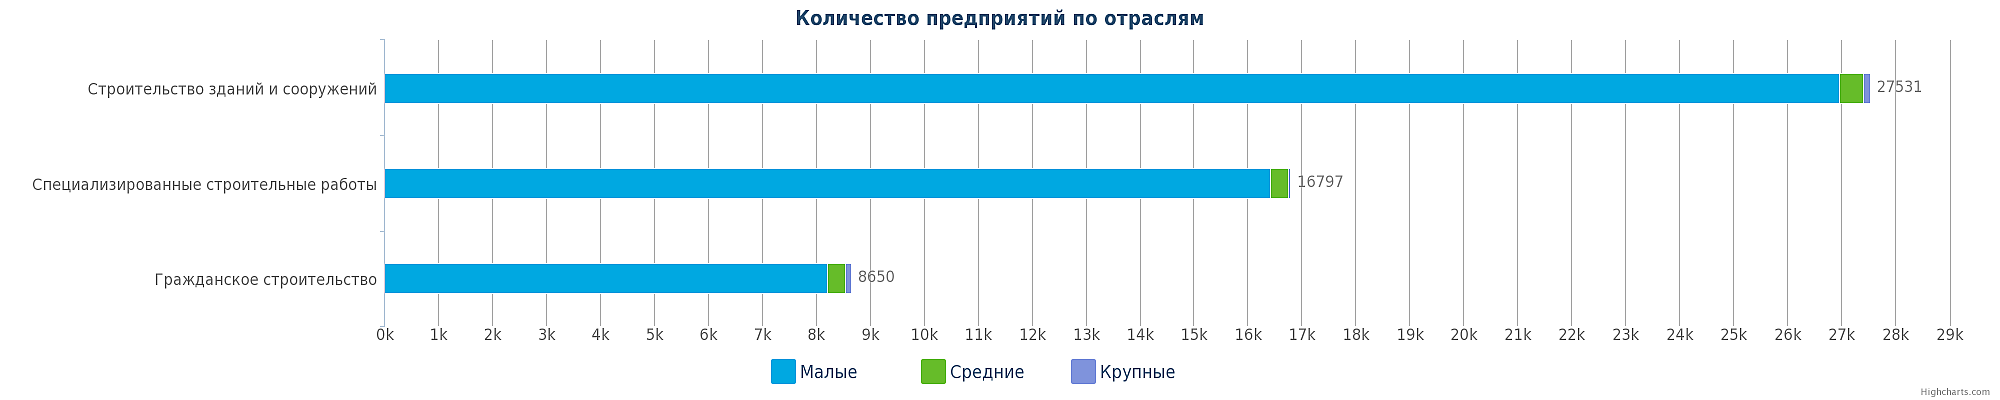 Строительные компании Казахстана по отраслям